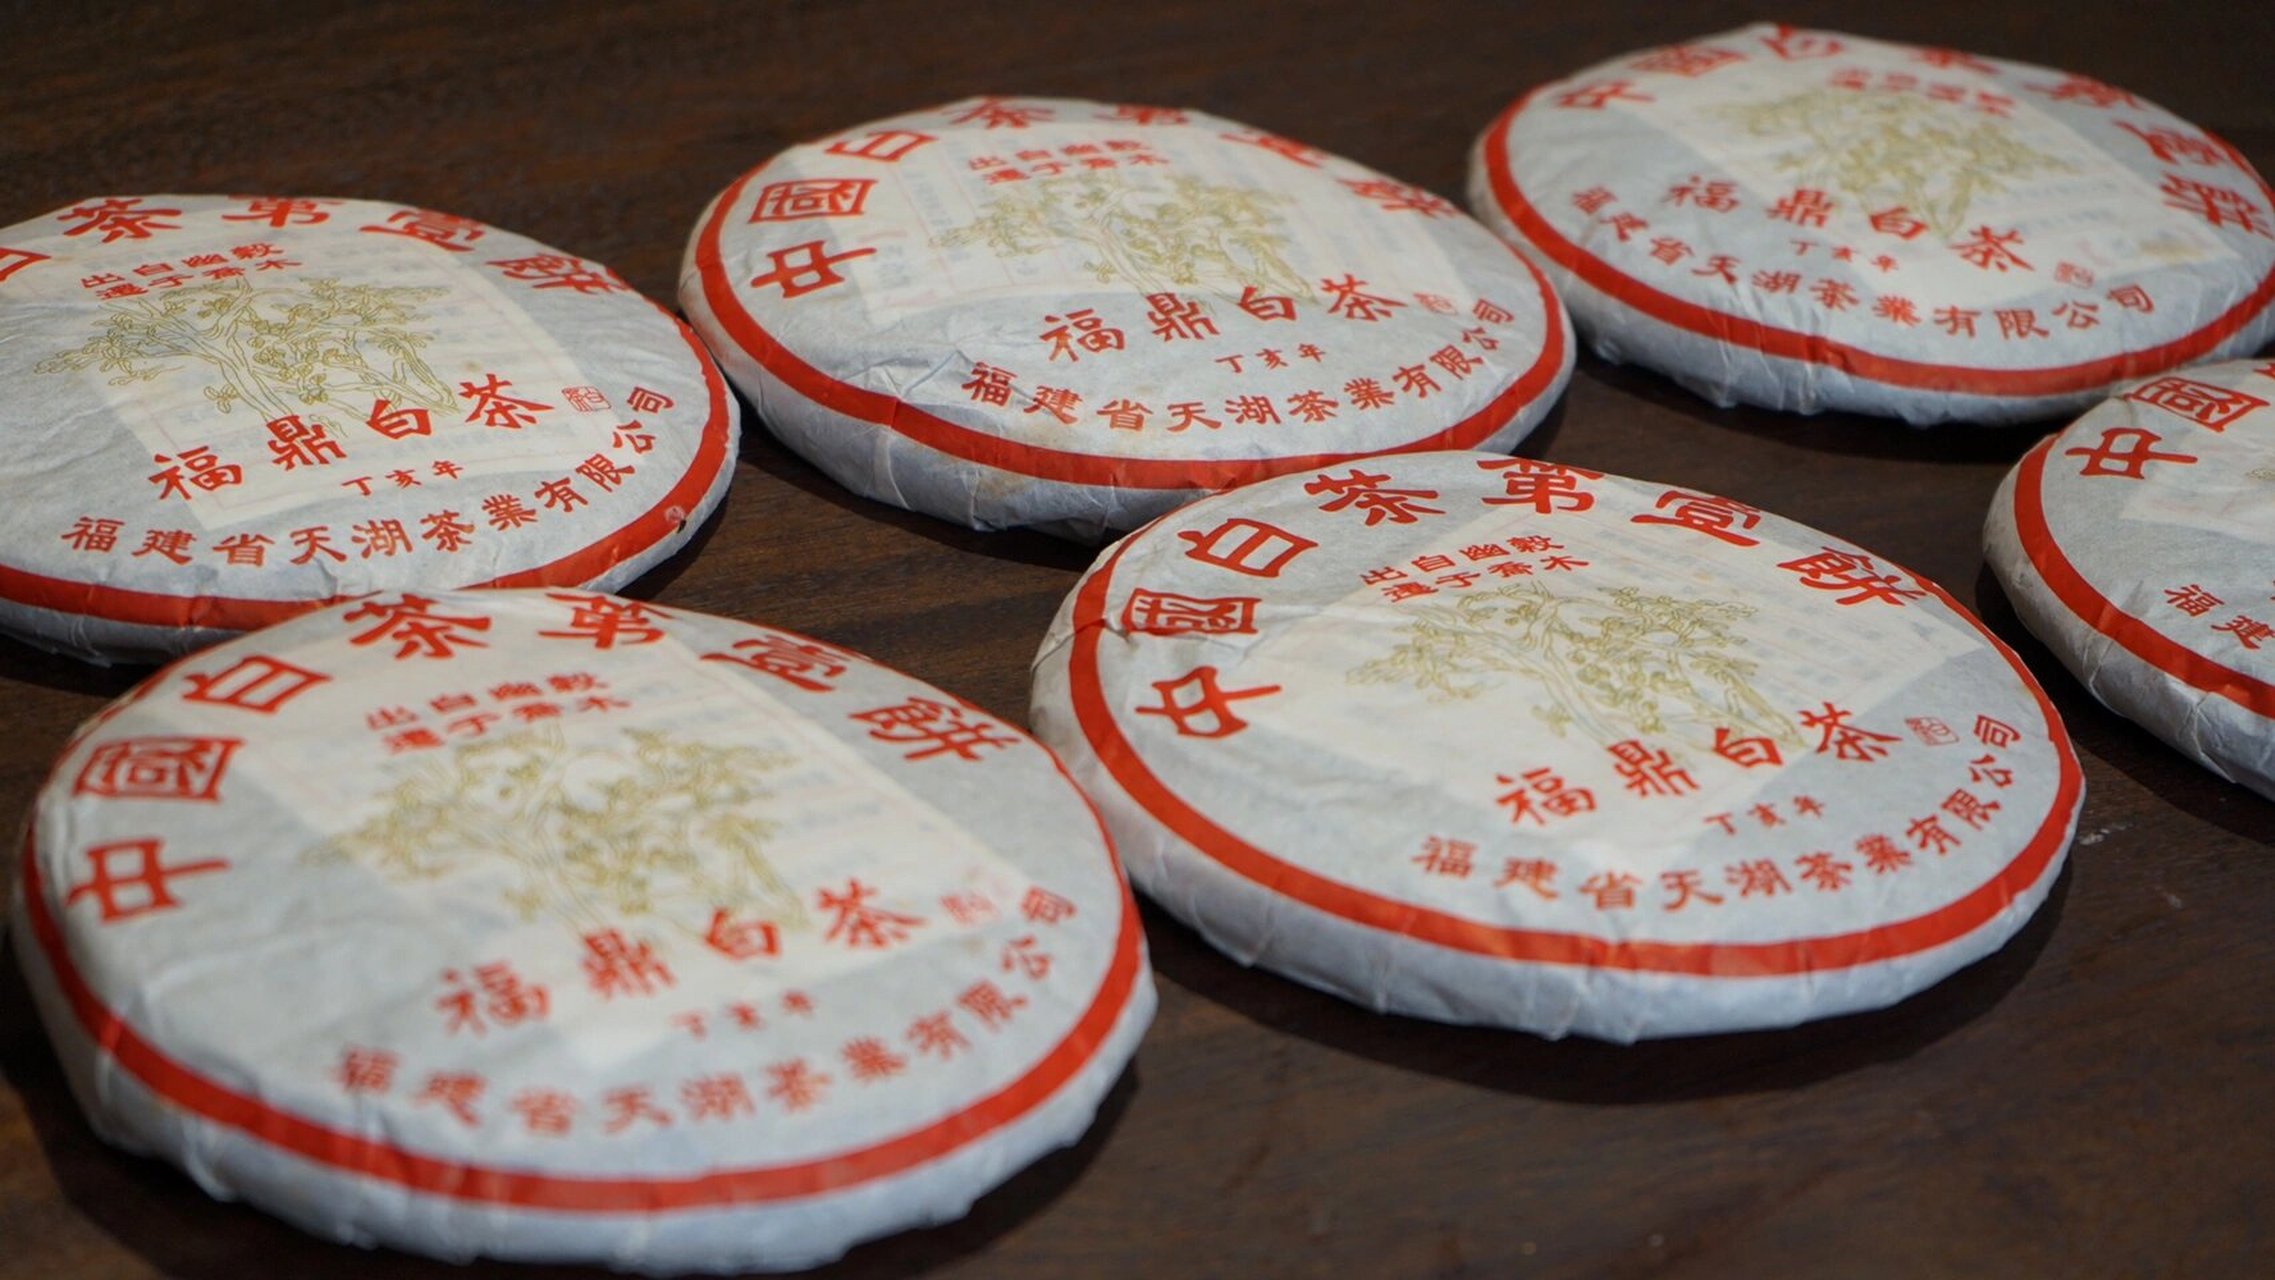 绿雪芽中国白茶第一饼图片